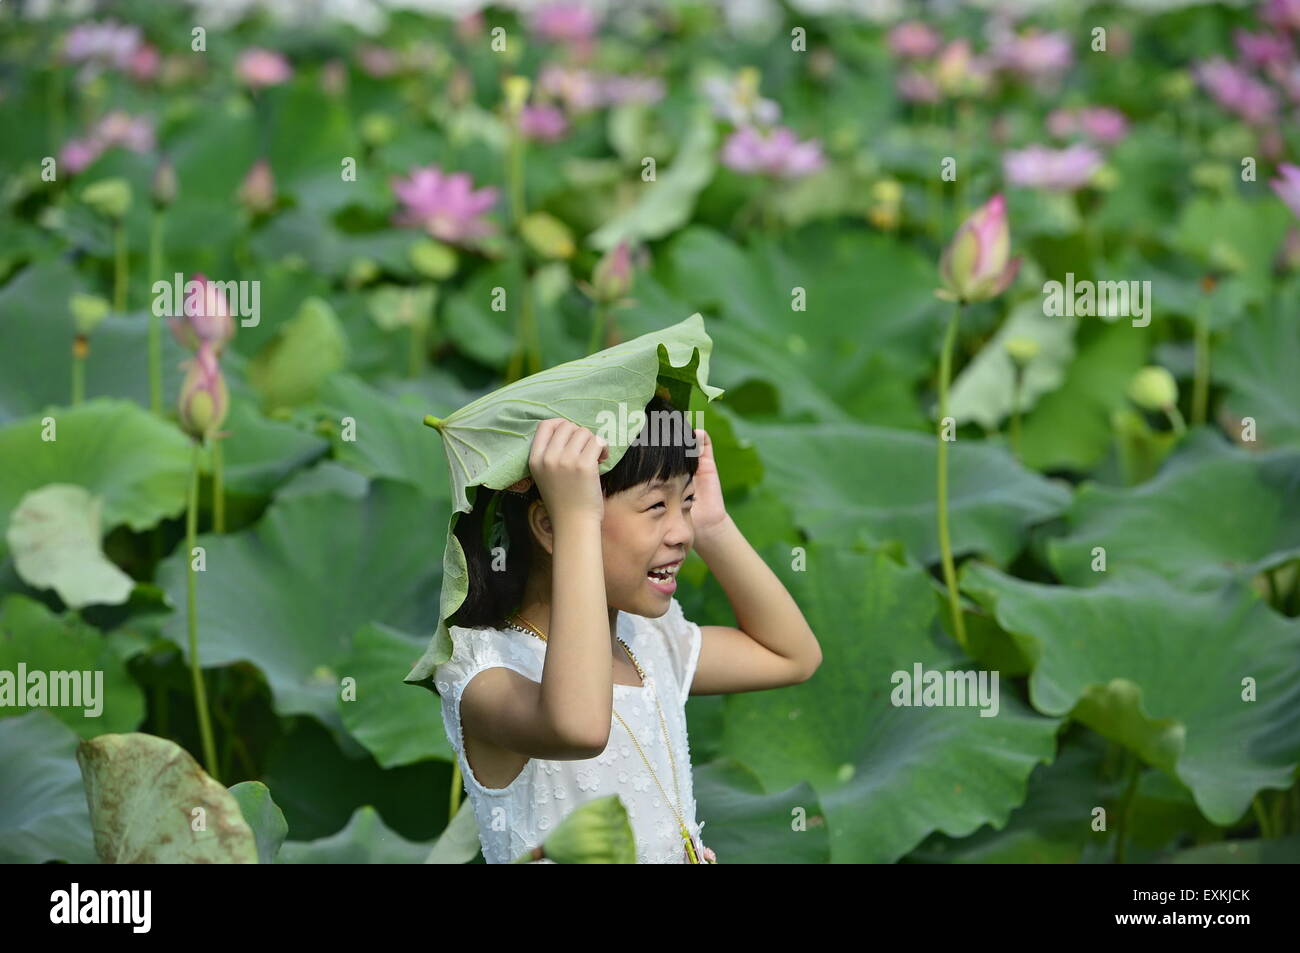 Nanchang, cinese della provincia di Jiangxi. 14 Luglio, 2015. Un bambino mette una foglia di loto sulla sua testa Yaoxi nel villaggio di Guangchang County, Cina orientale della provincia di Jiangxi, luglio 14, 2015. Yaoxi Village, che ha più di 1.300 anni di storia per la piantagione di lotus, ha 90.000 um (6.000 ettari ) di piantagione zona con produzione annuale in grado di colpire 540 milioni di yuan (87 milioni di dollari). © Zhou Mi/Xinhua/Alamy Live News Foto Stock